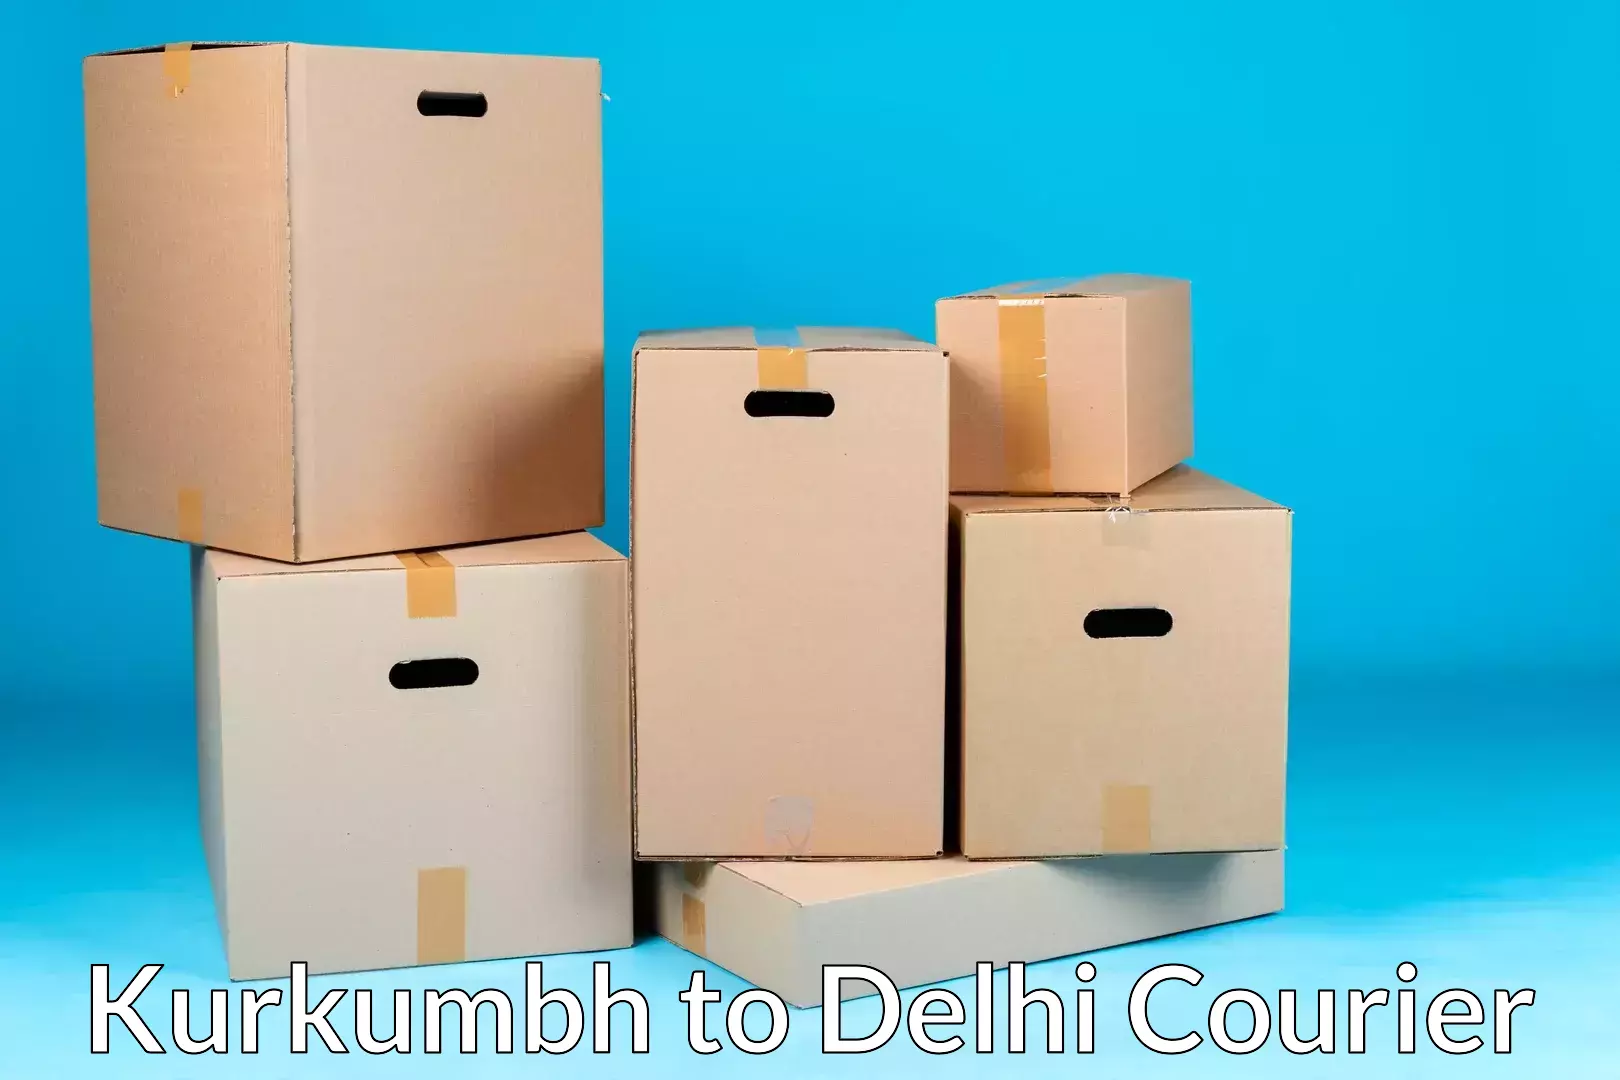 Door-to-door relocation services Kurkumbh to Ashok Vihar